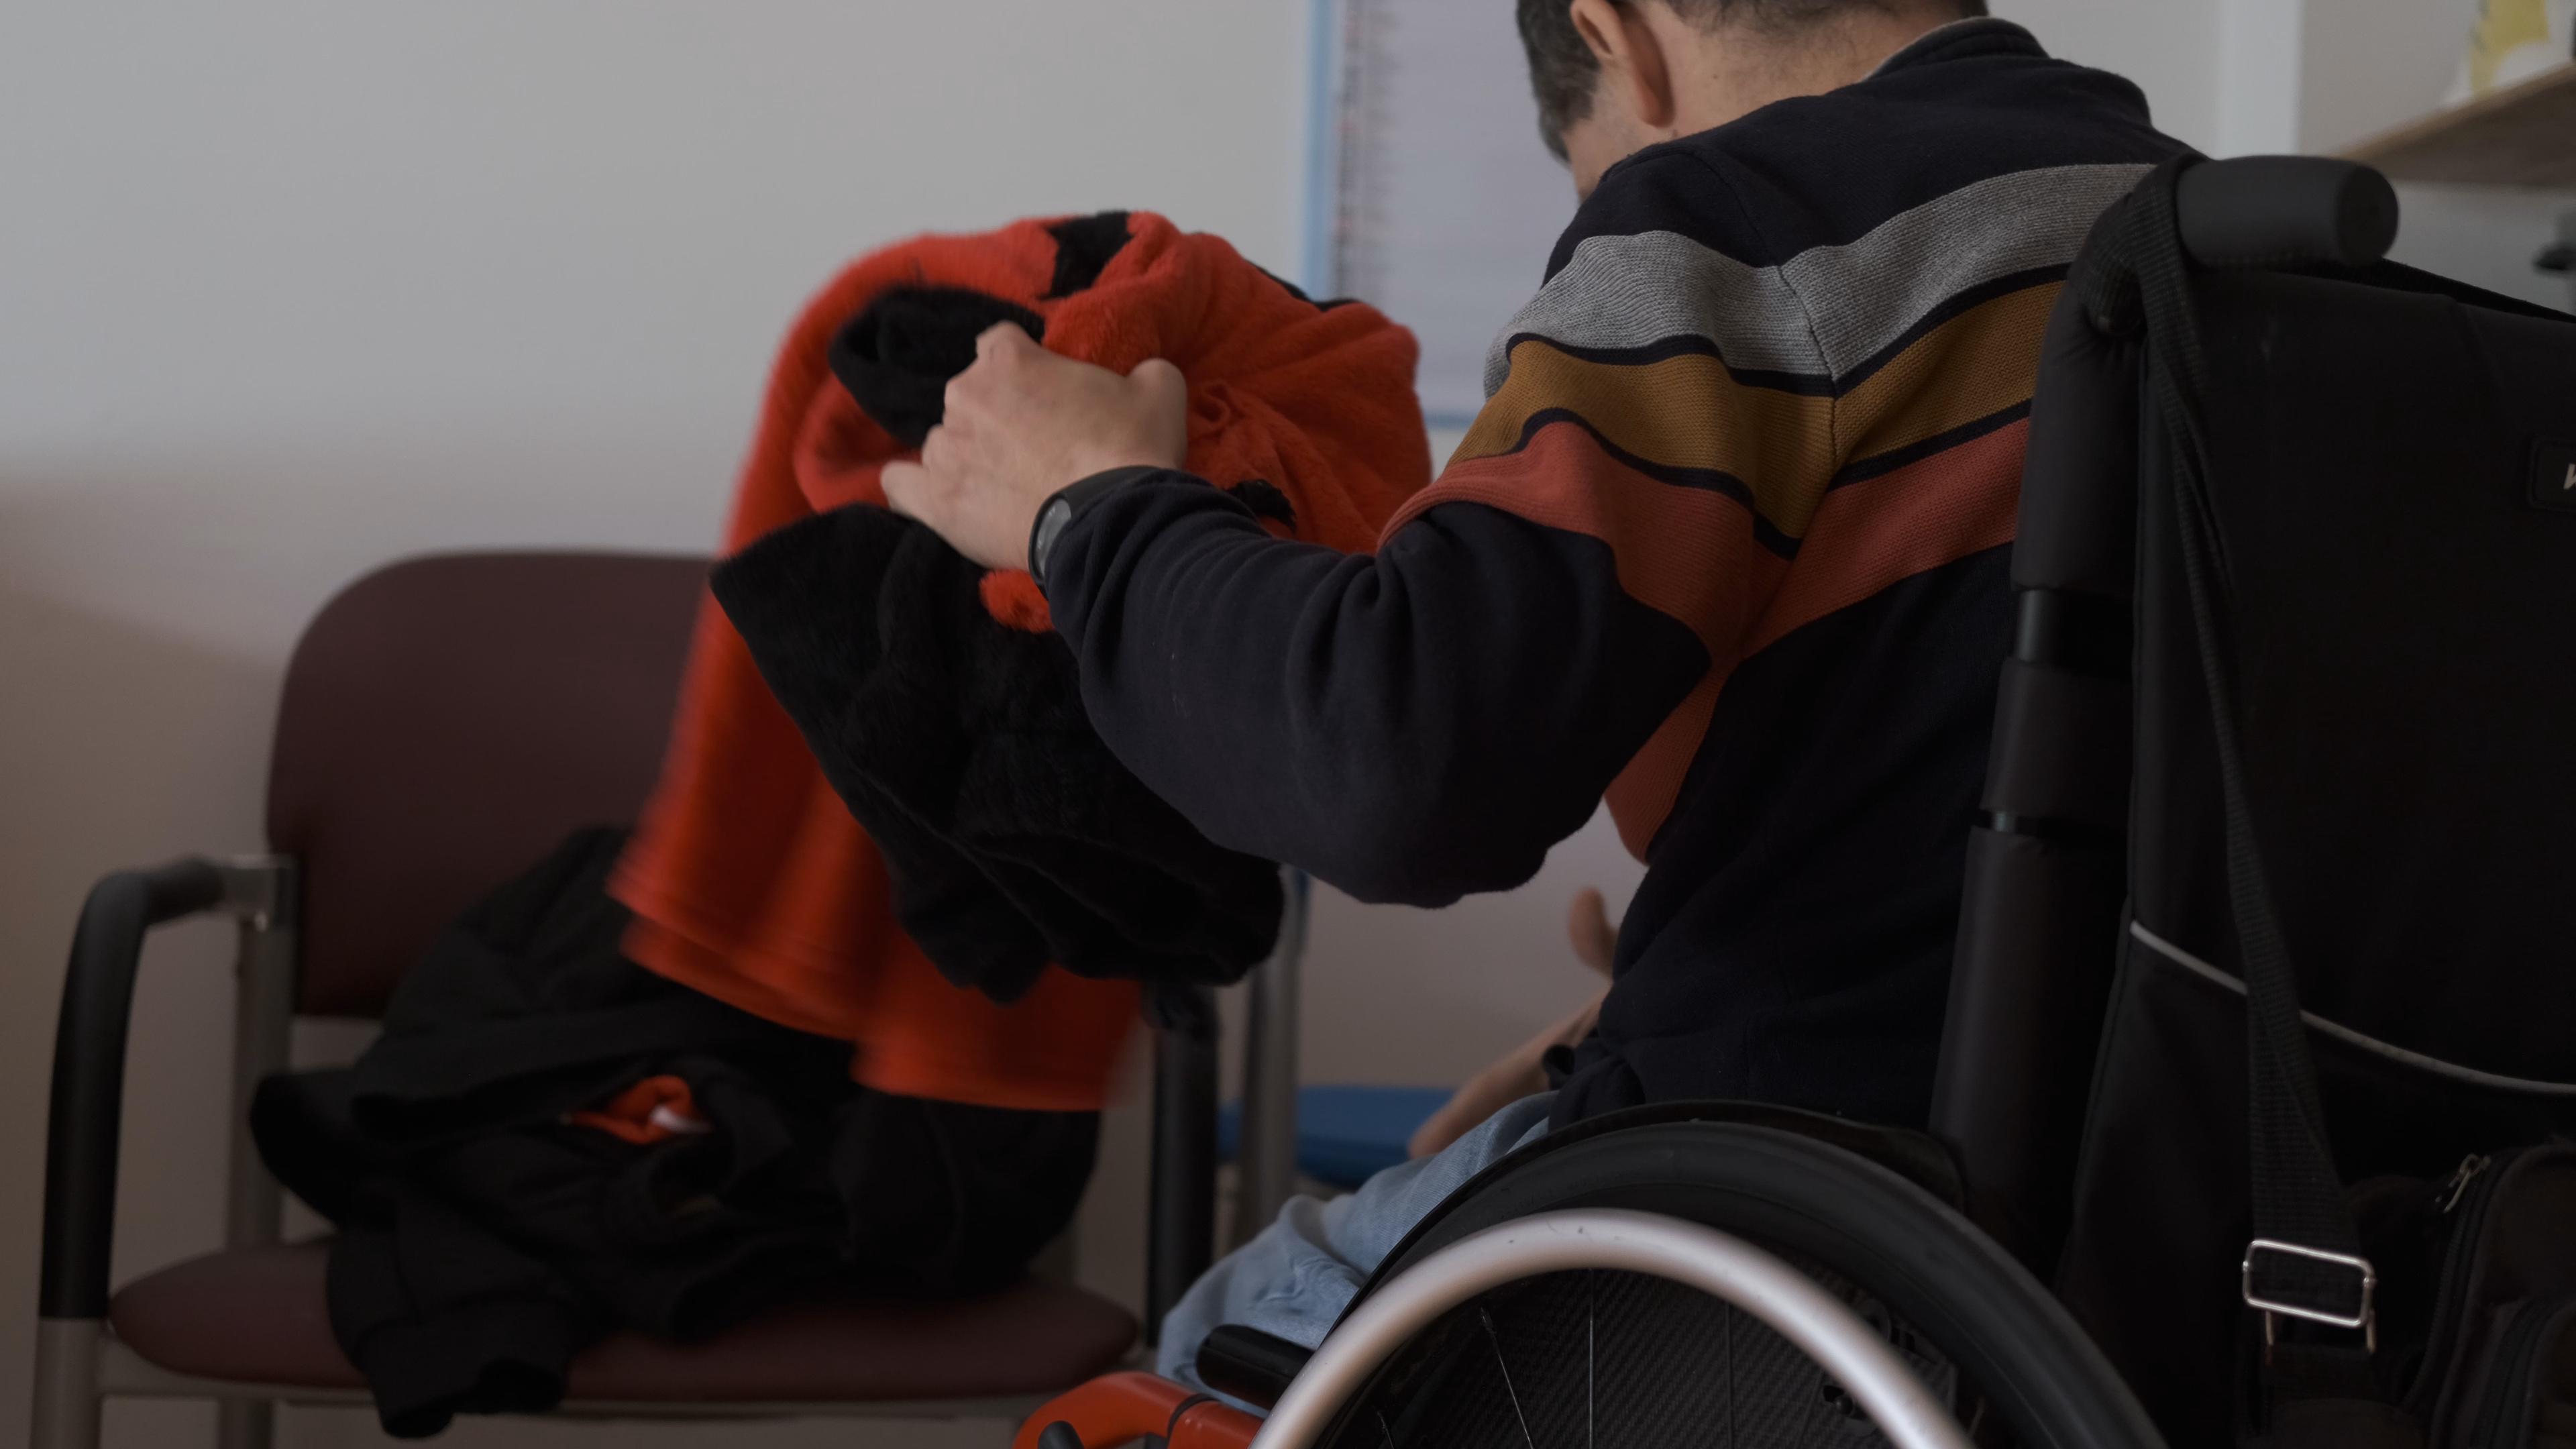 Federación ASPACE Galicia pone en marcha la segunda edición del Curso de formación online sobre asistencia personal con personas con parálisis cerebral